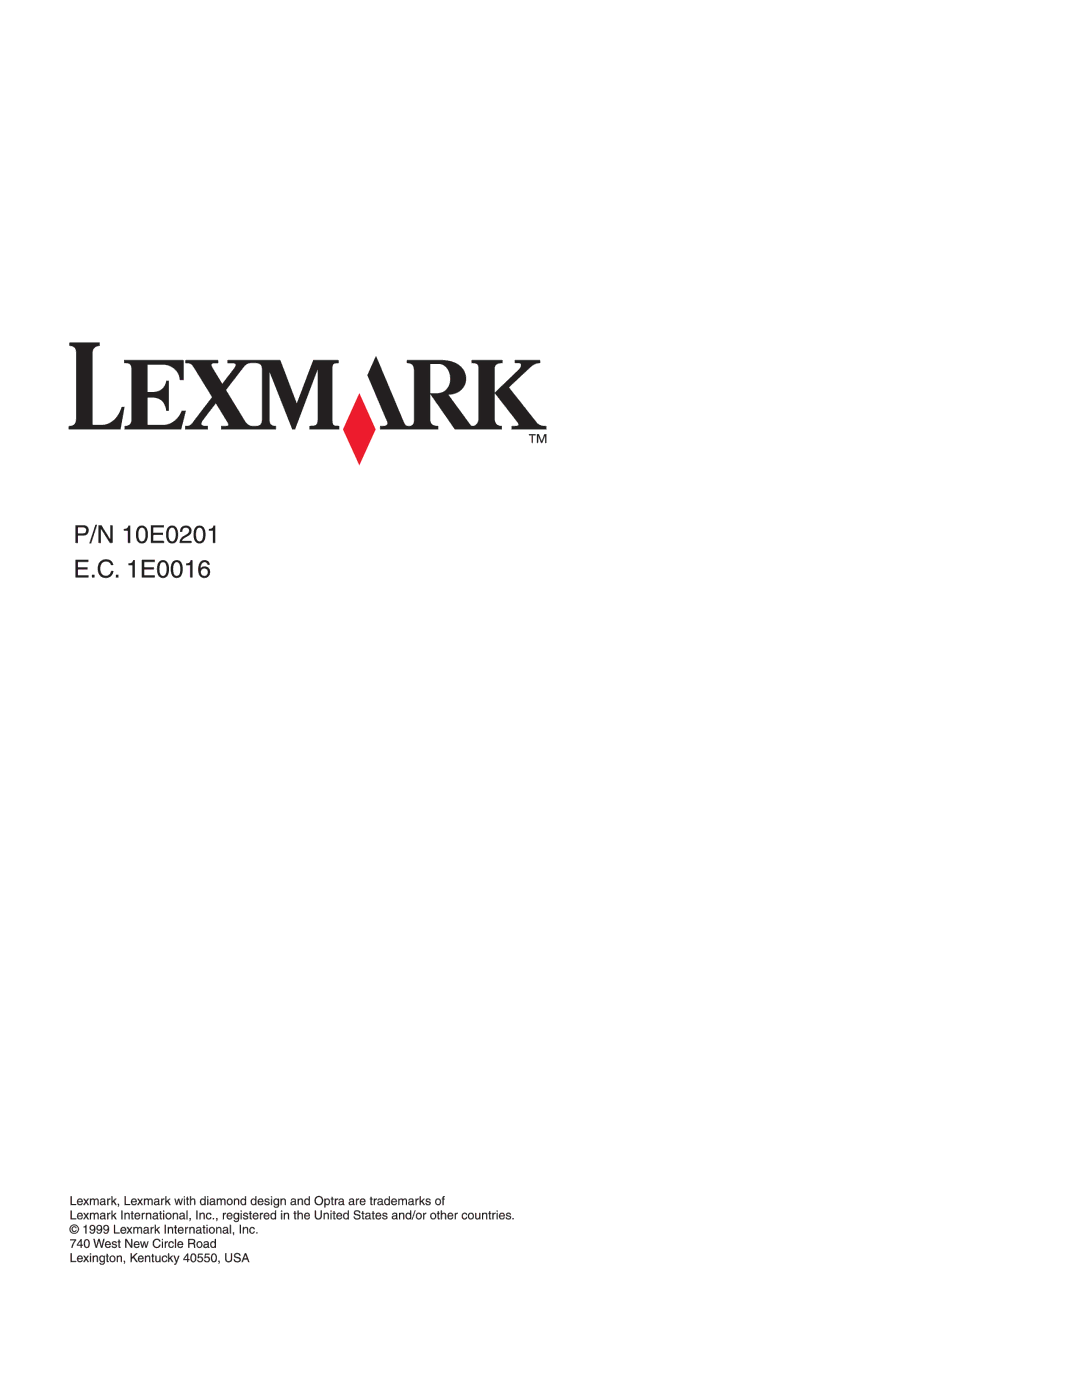 Lexmark Optra C710 manual 